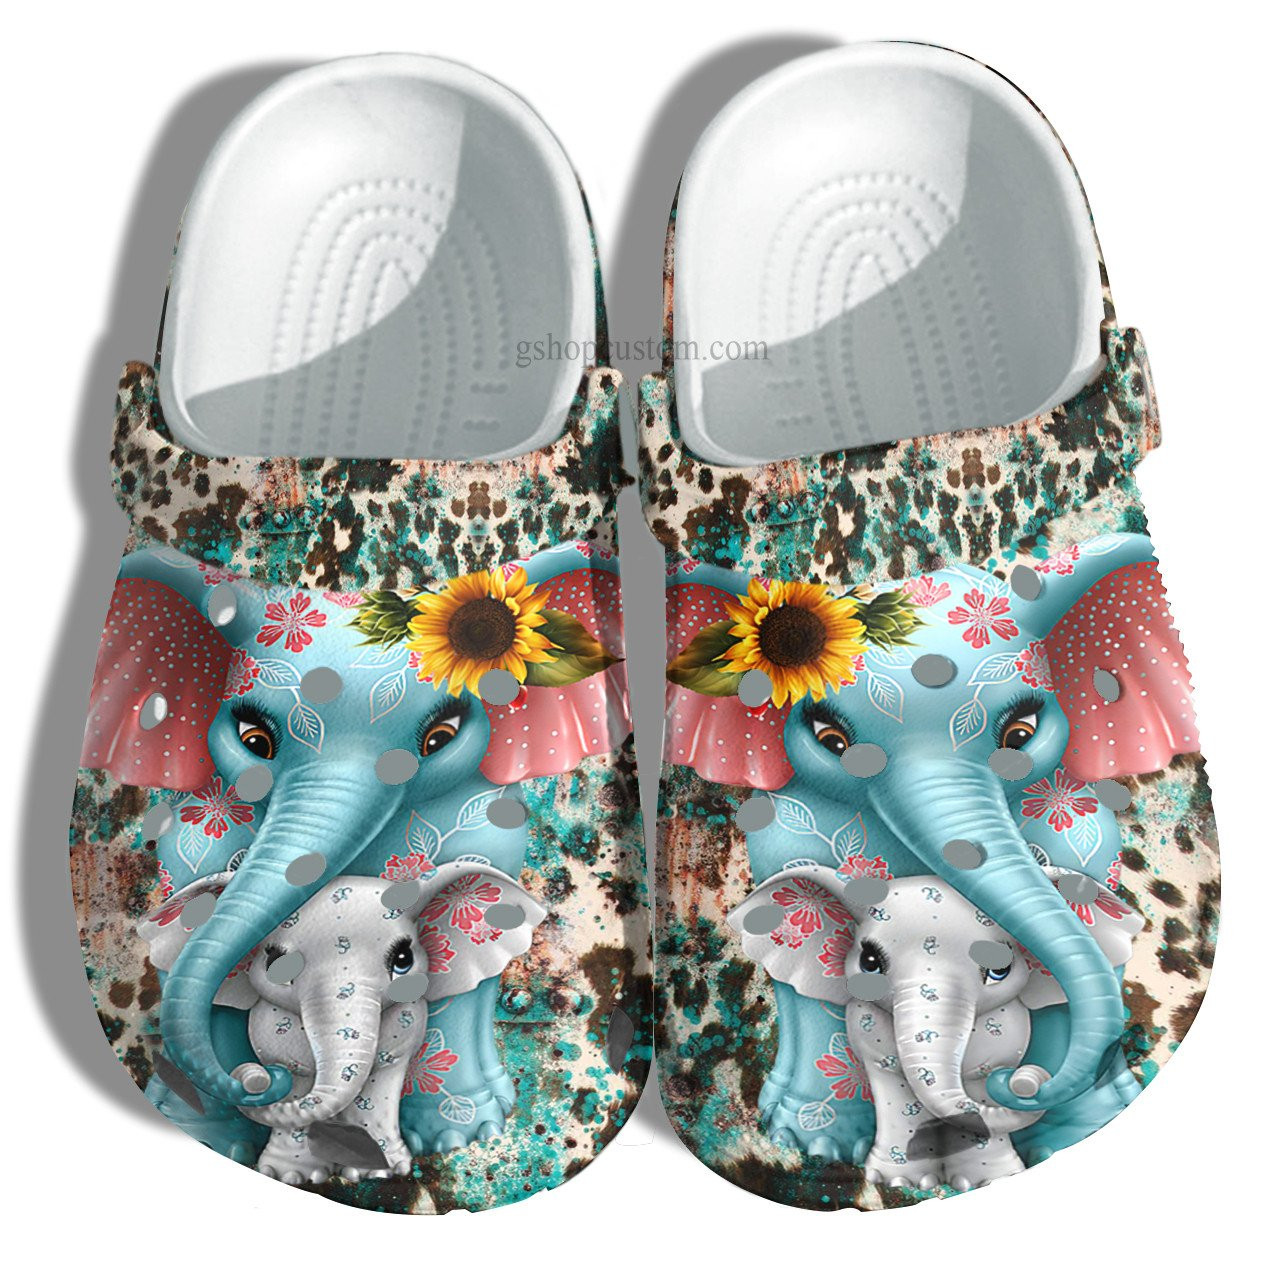 Elephant Mom Boho Leopard Skin Crocs Shoes - Elephant Mom And Baby Elephant Shoes Croc Clogs